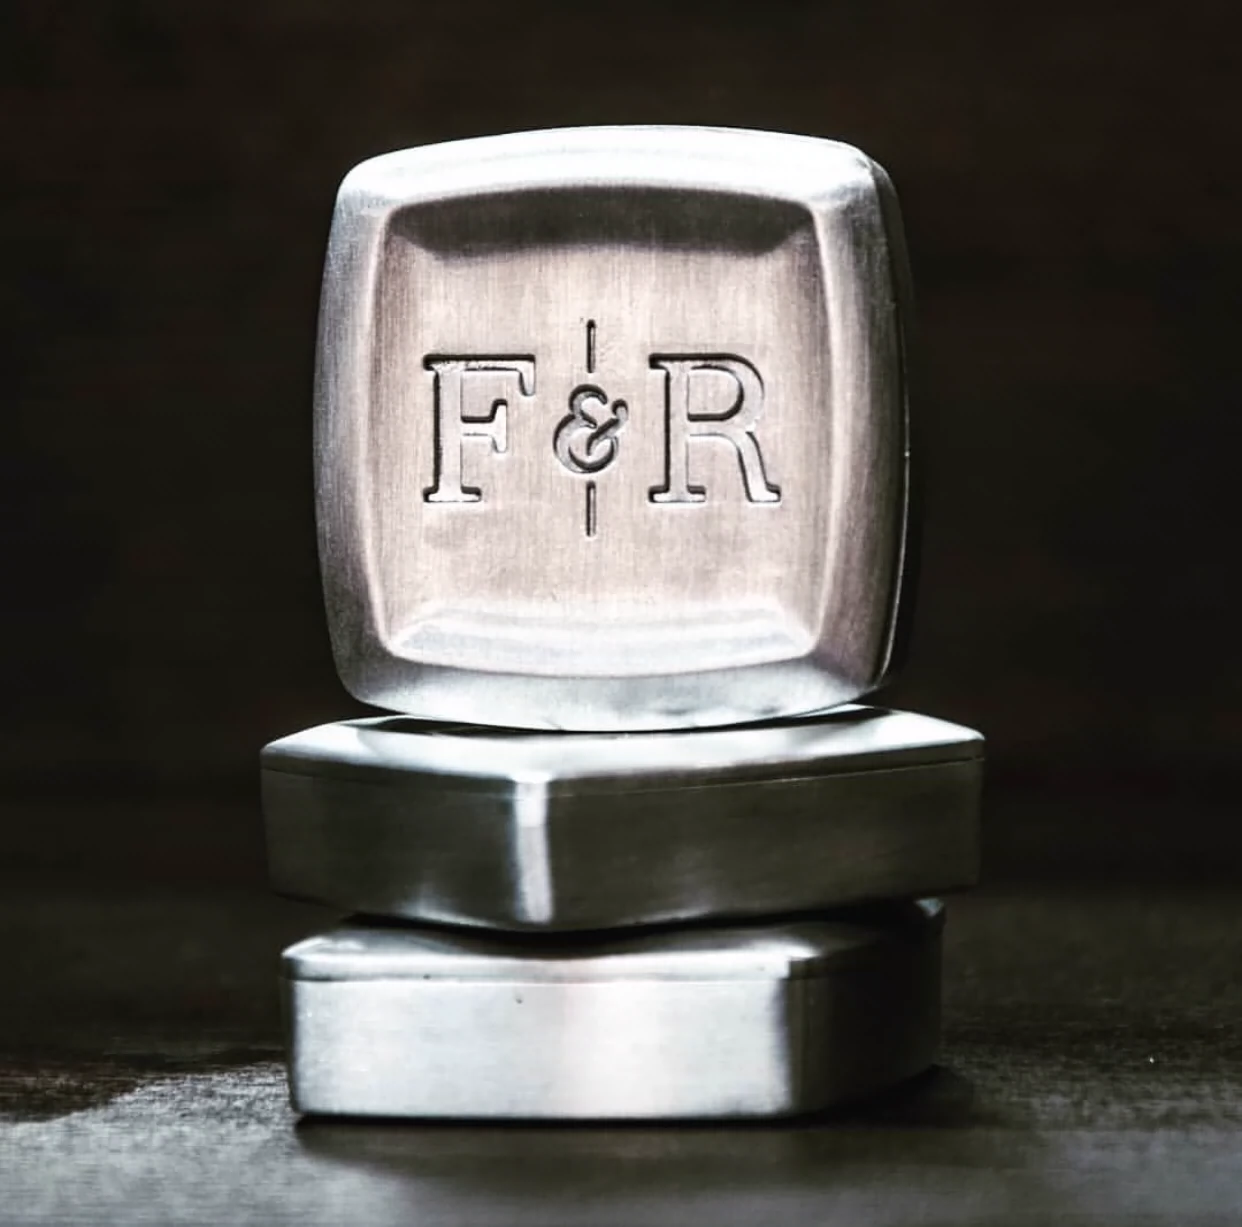 Spot American F&R Outdoor Portable Solid Cologne Light Fragrance Nước hoa Nam Thuốc mỡ Thuốc mỡ Bạn trai Quà tặng sinh nhật - Nước hoa